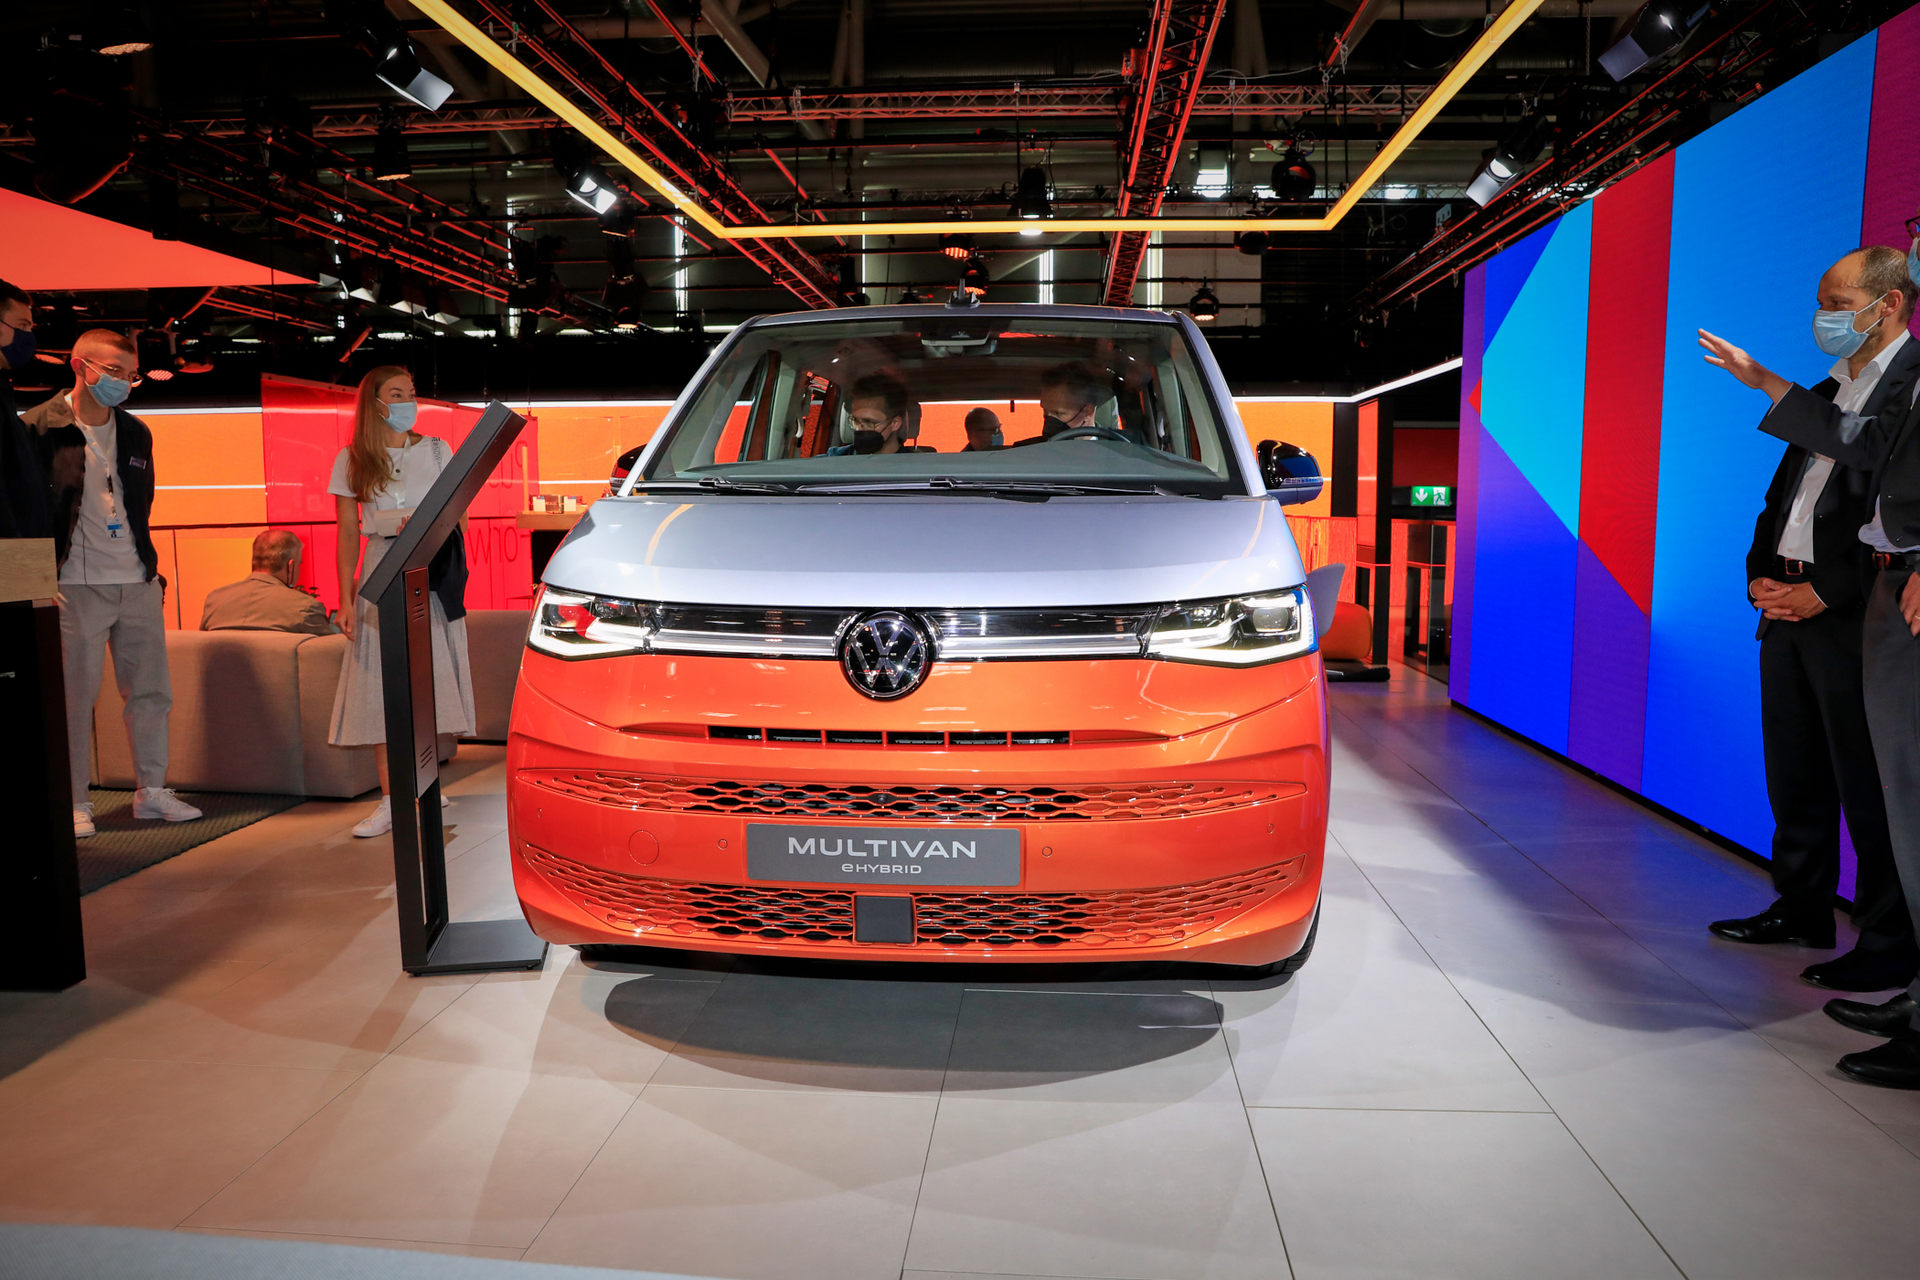 2022 VW T7 Multivan resim galerisi (08.09.2021)